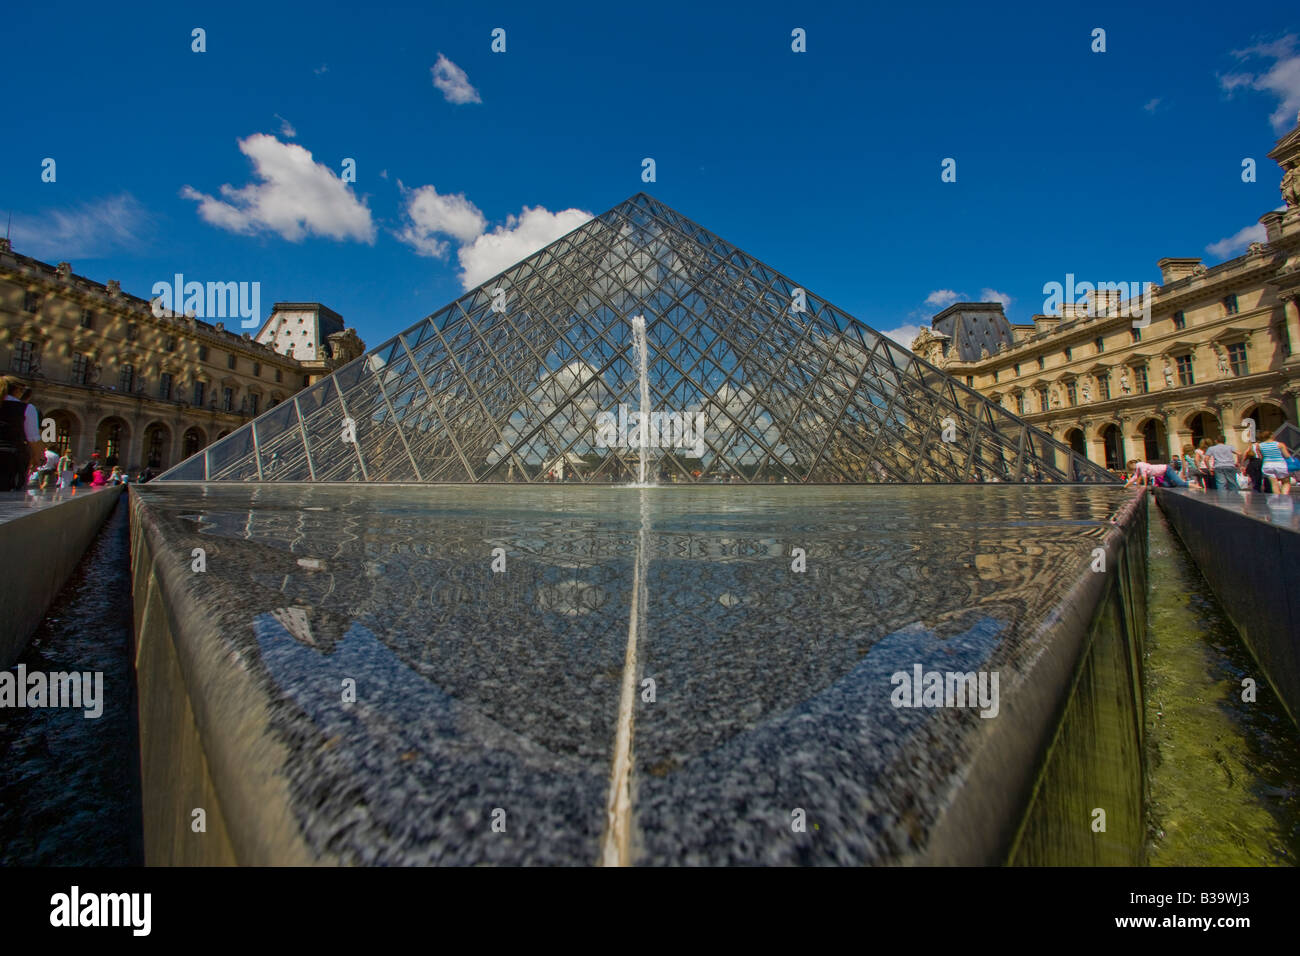 Museum Louvre Pyramide Eingang mit Brunnen Pool und Springbrunnen vor dem gläsernen Pyramide Struktur Paris Sehenswürdigkeiten Stockfoto